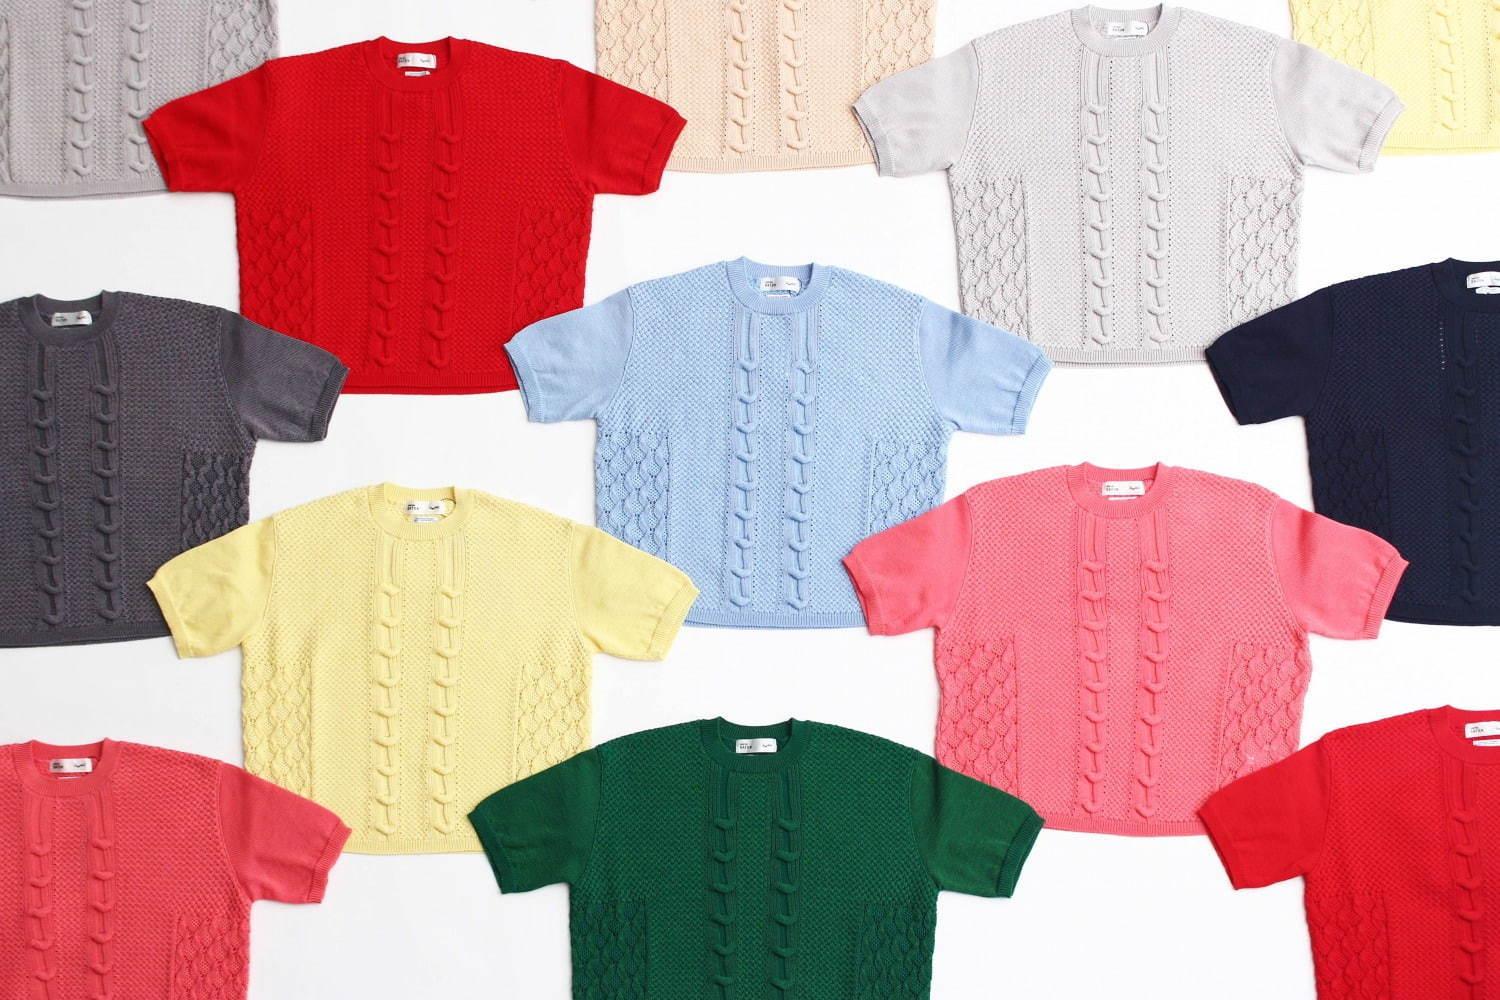 パスザバトン×米富繊維のカラフルサマーニット - 全11色展開、Tシャツのように着回す夏ニット コピー